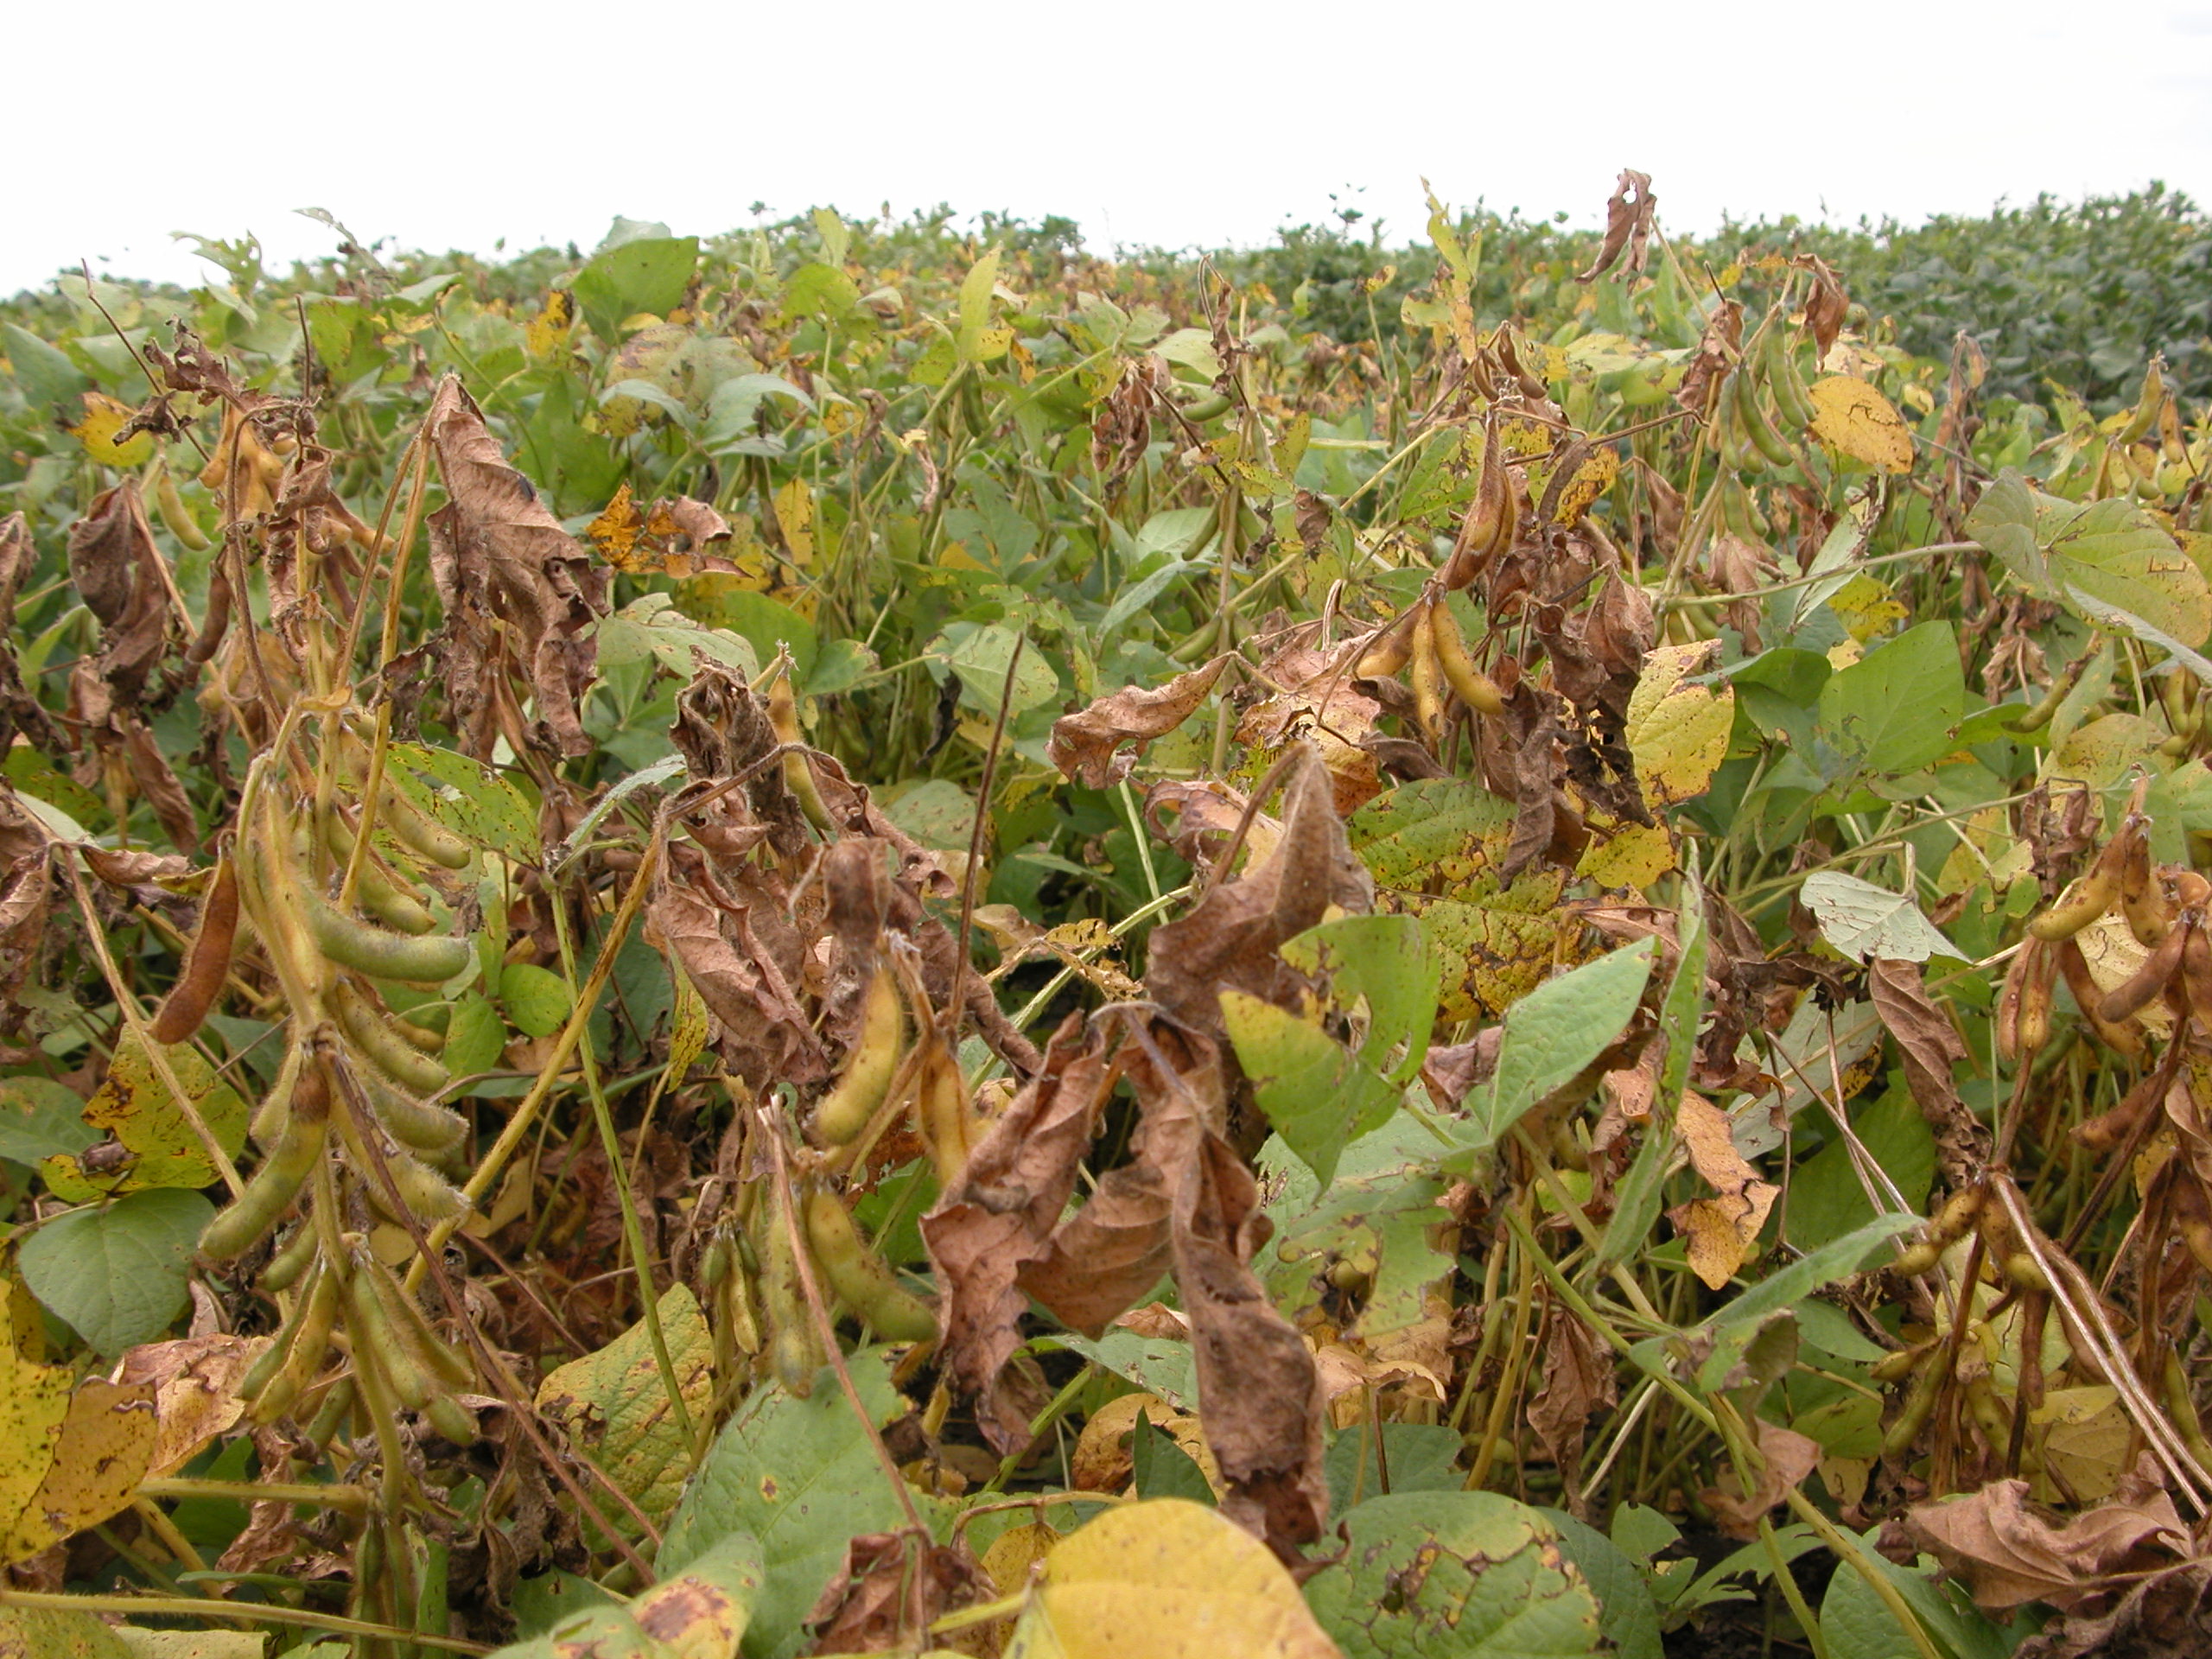 Severe stem canker in soybean field. 